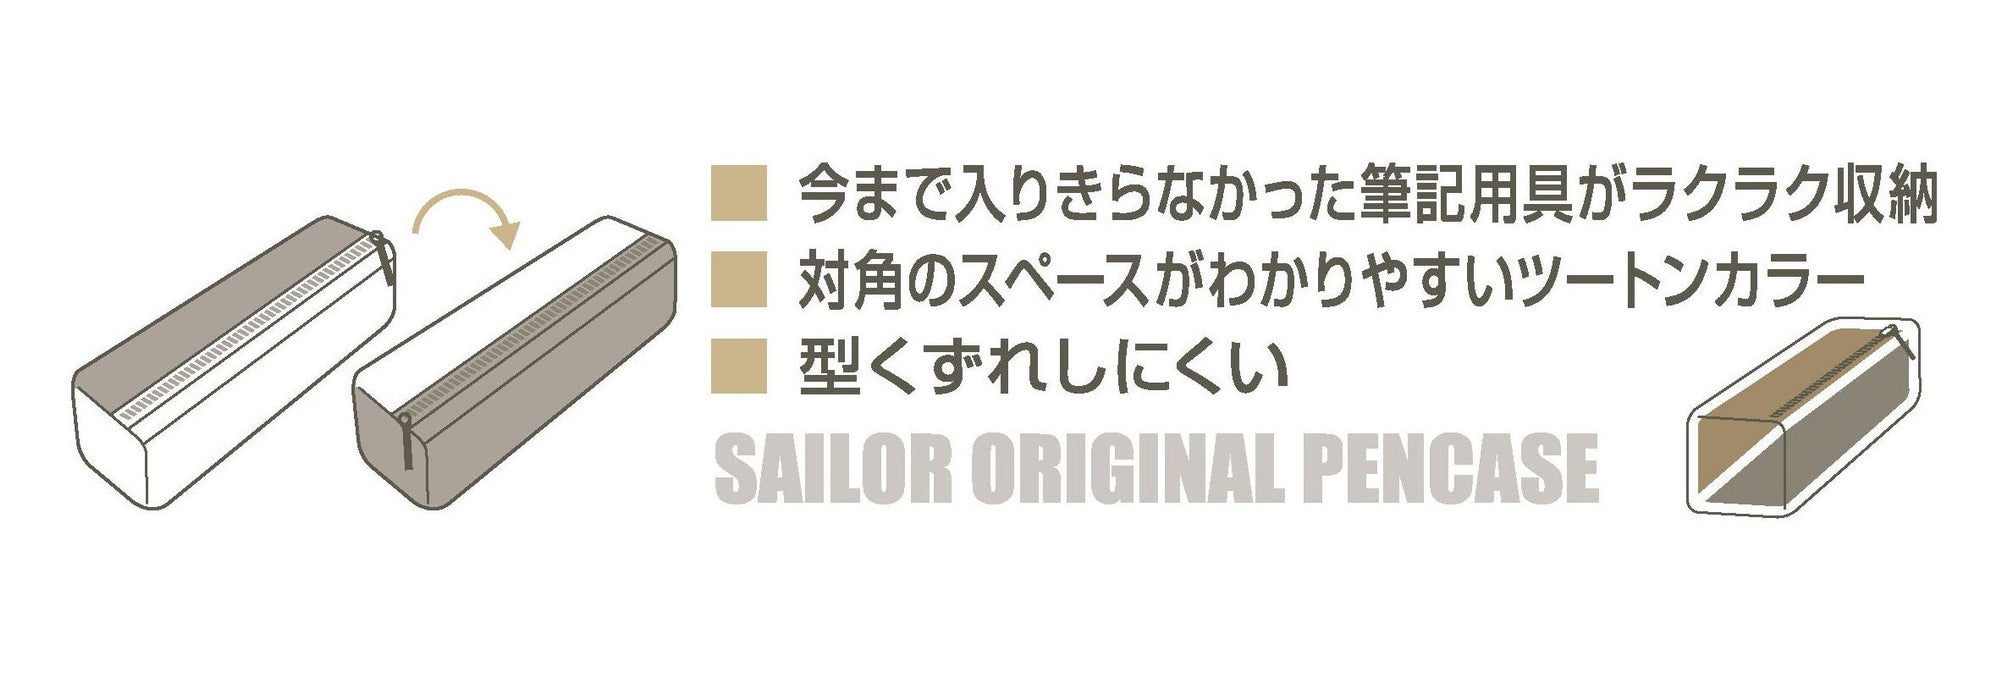 Sailor 钢笔配海军蓝/米色合成皮革笔套 Deli 002 型号